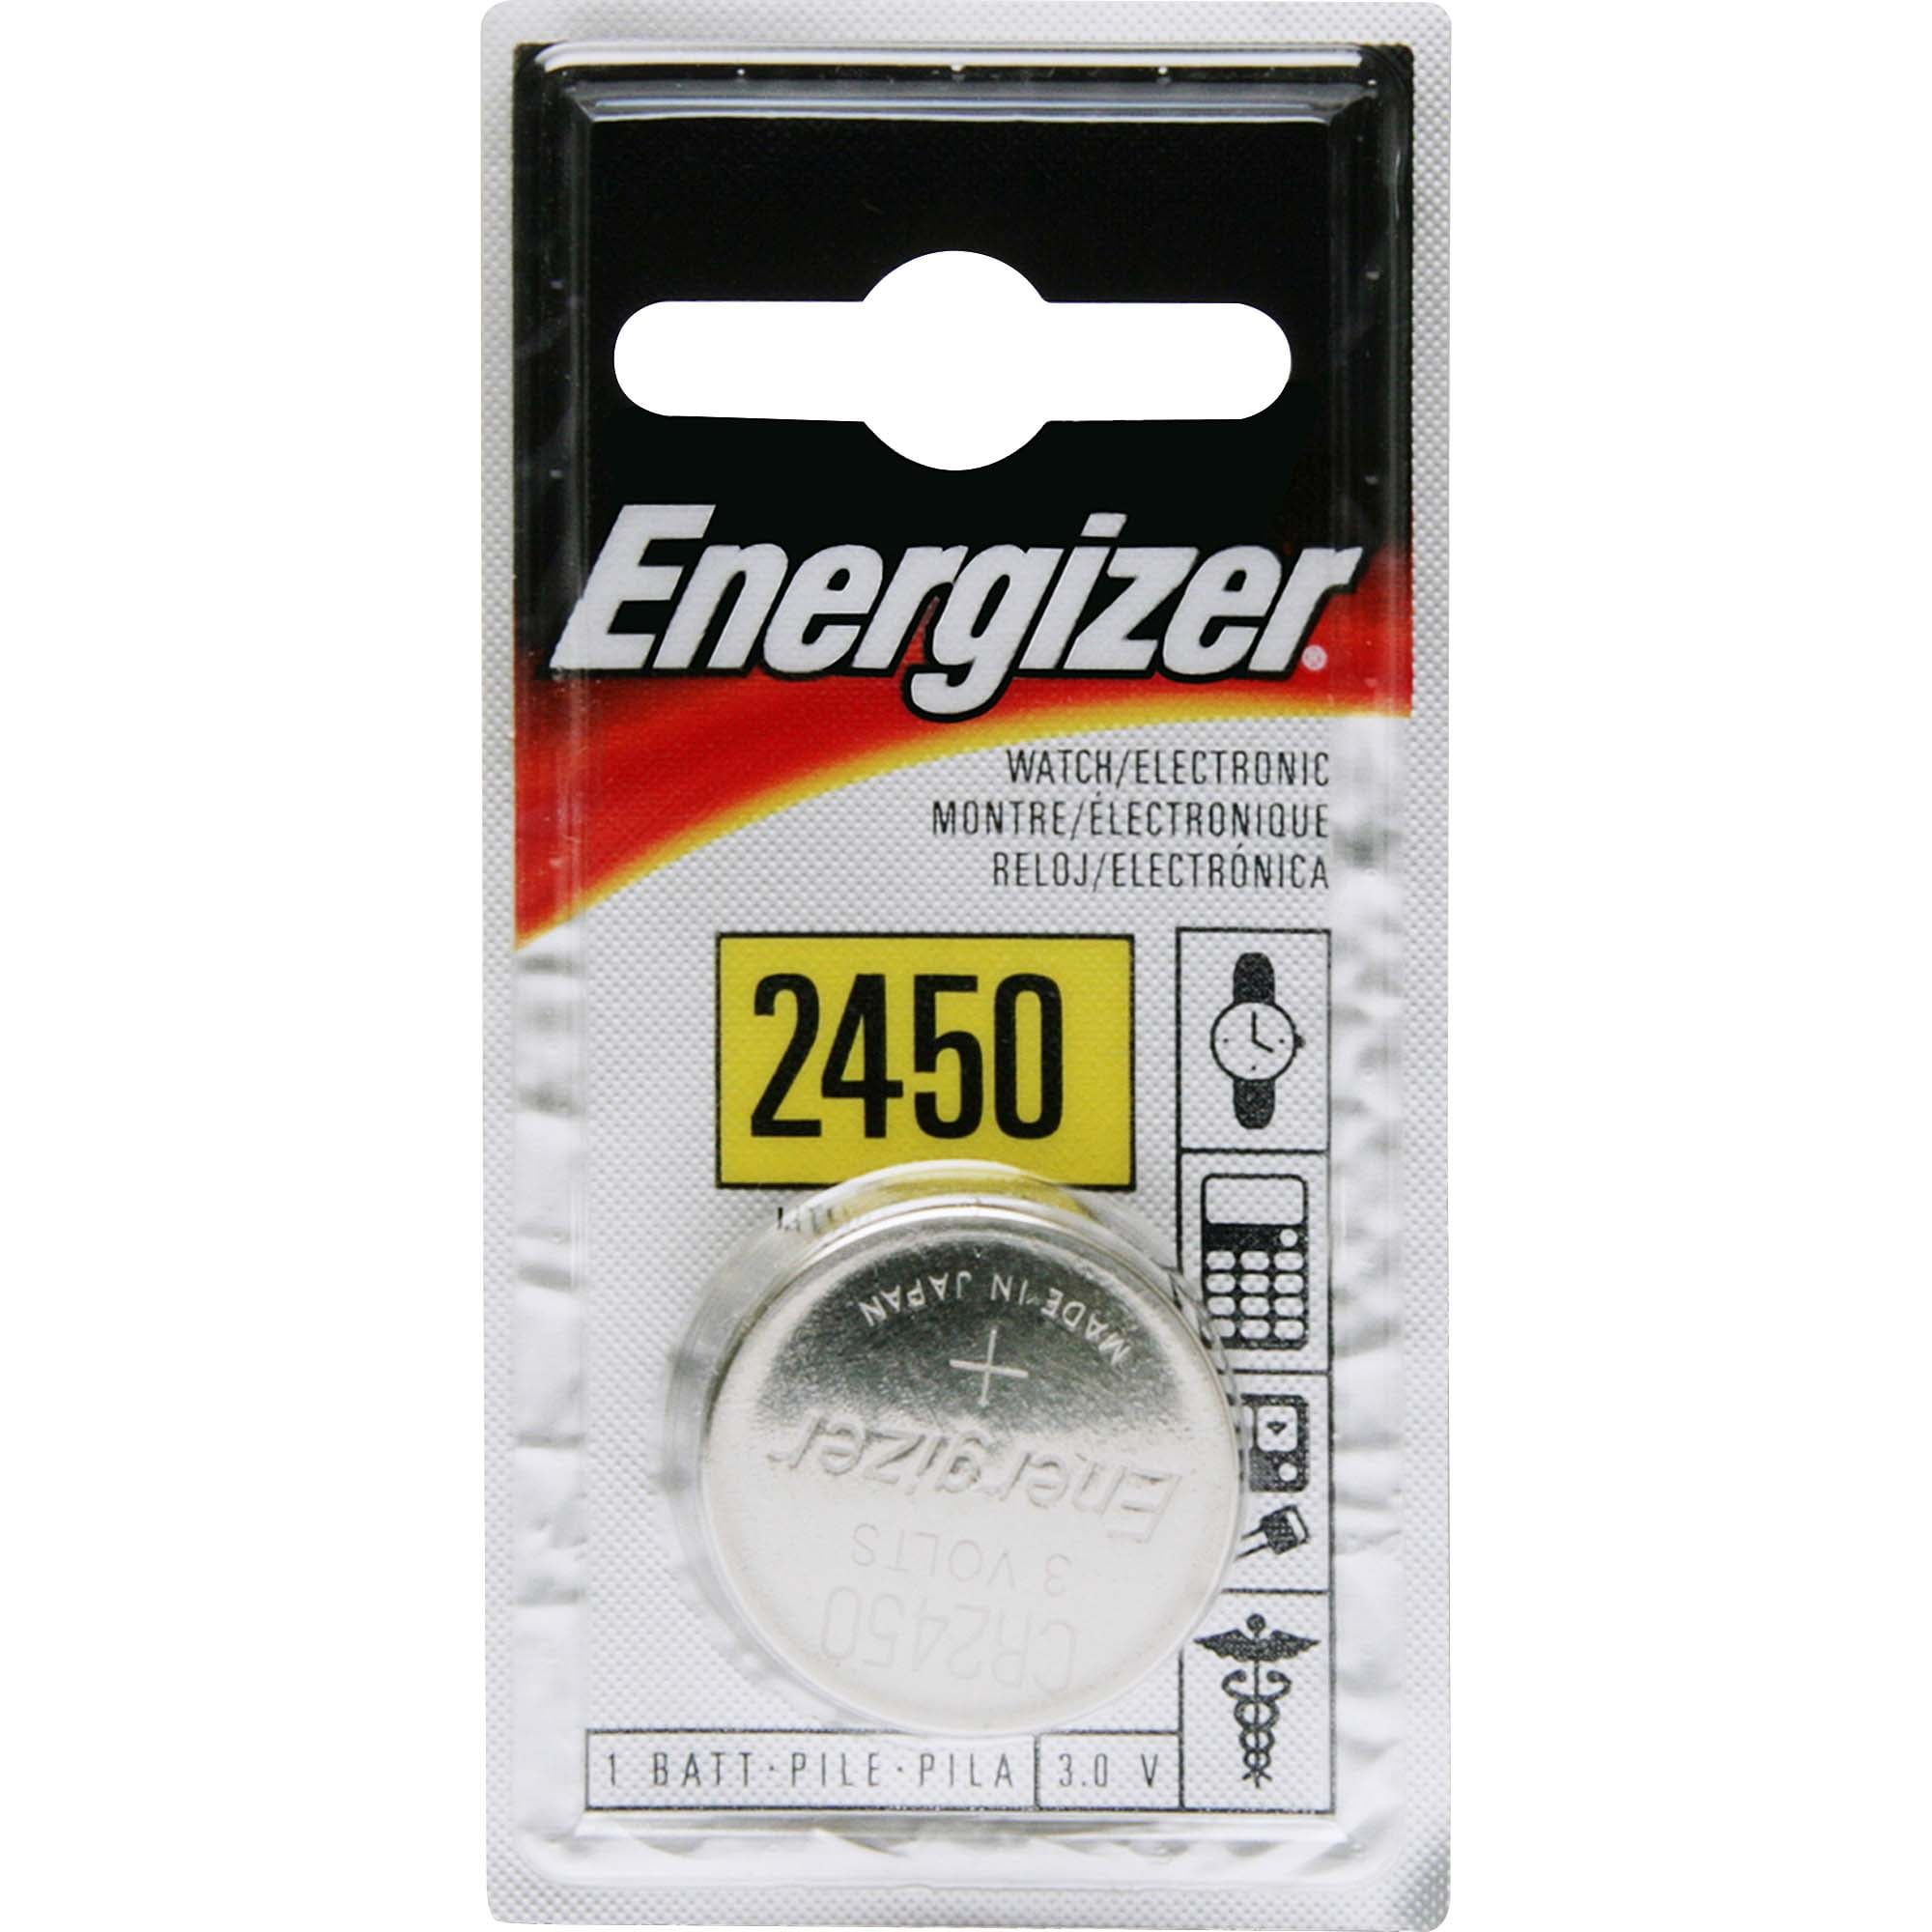 CR2450 Batteries, 6-pack - Star Trading @ RoyalDesign